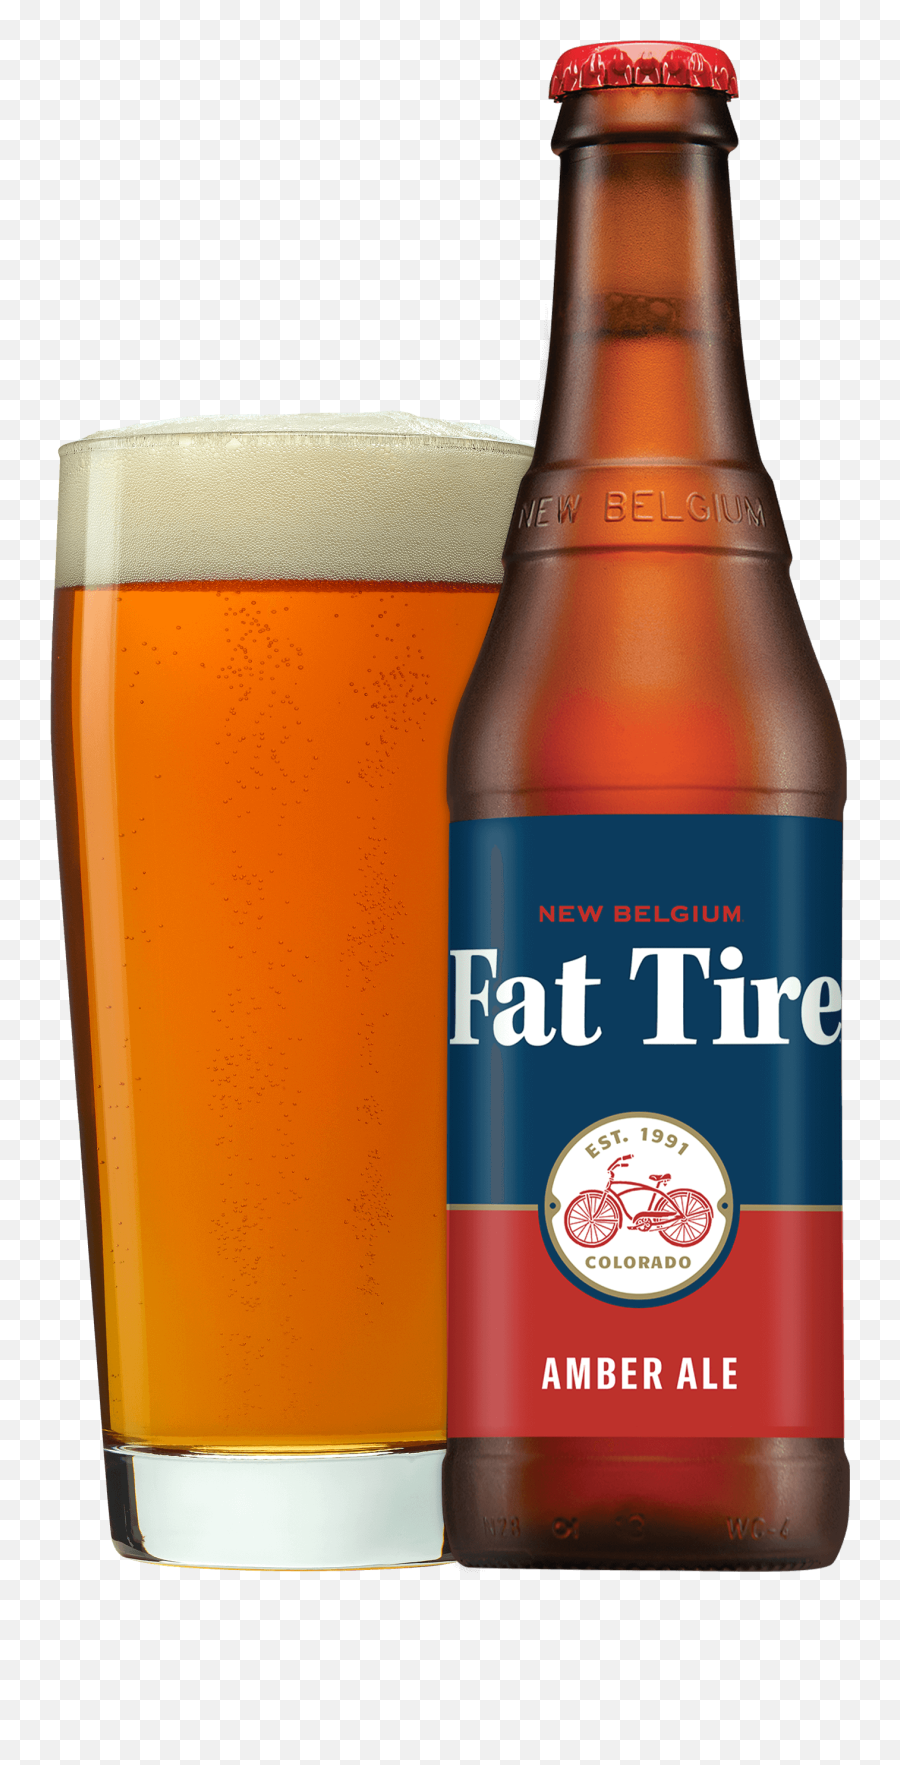 Fat Tire - Fat Tire Beer Emoji,Modelo Negra Beer Emoji